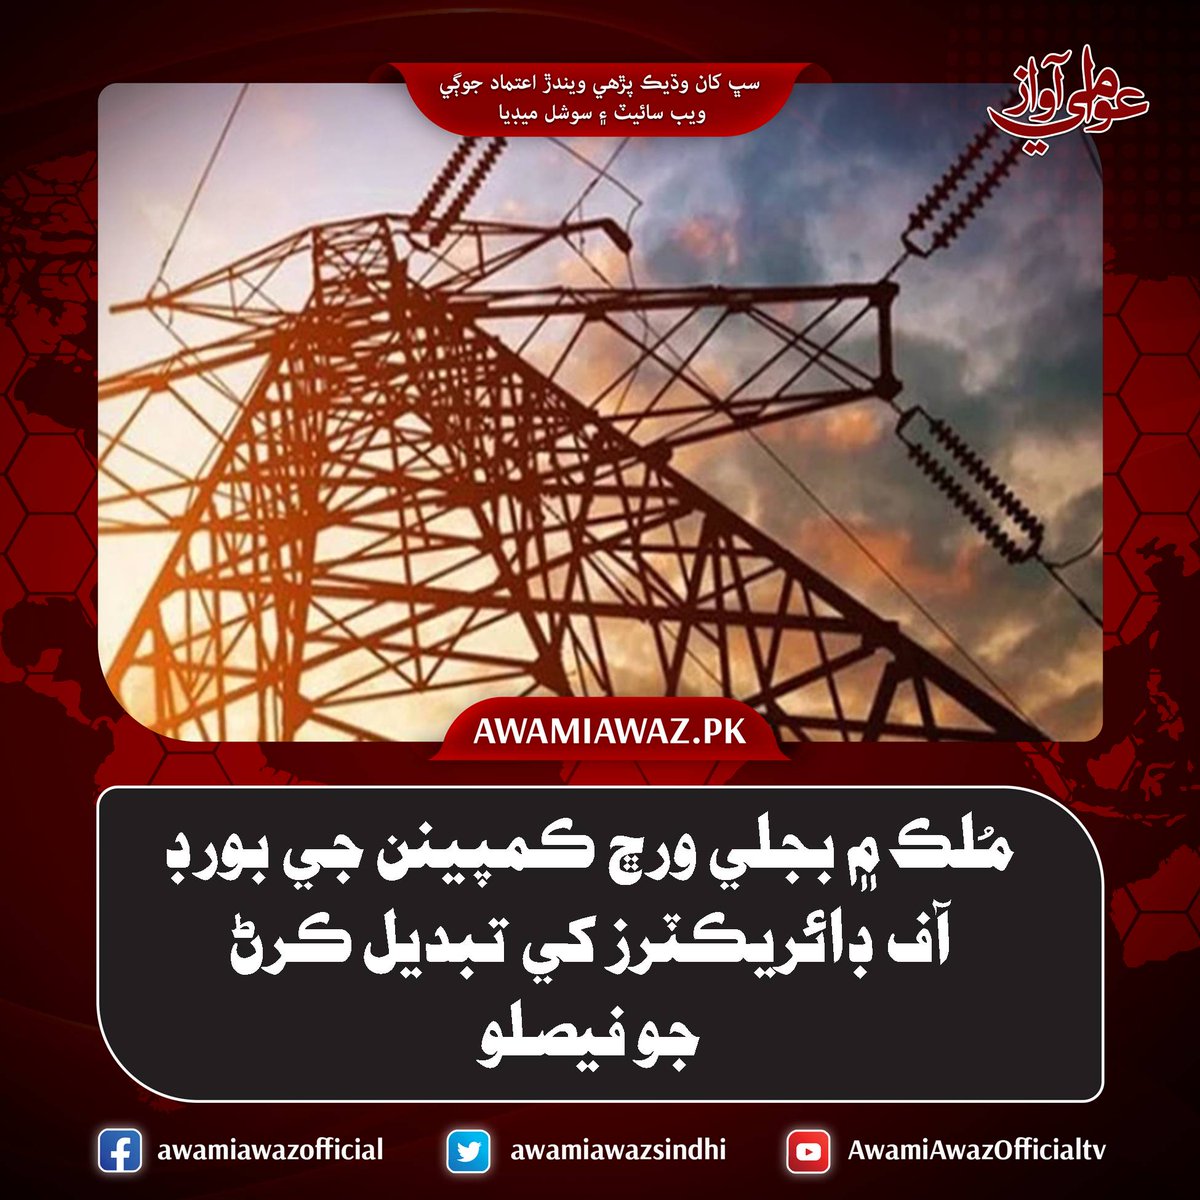 مُلڪ ۾ بجلي ورڇ ڪمپينن جي بورڊ آف ڊائريڪٽرز کي تبديل ڪرڻ جو فيصلو
وڌيڪ تفصيل لاءِ وزٽ ڪريو
awamiawaz.pk/1107022
#NTCD #Electricity #PowerMinistry